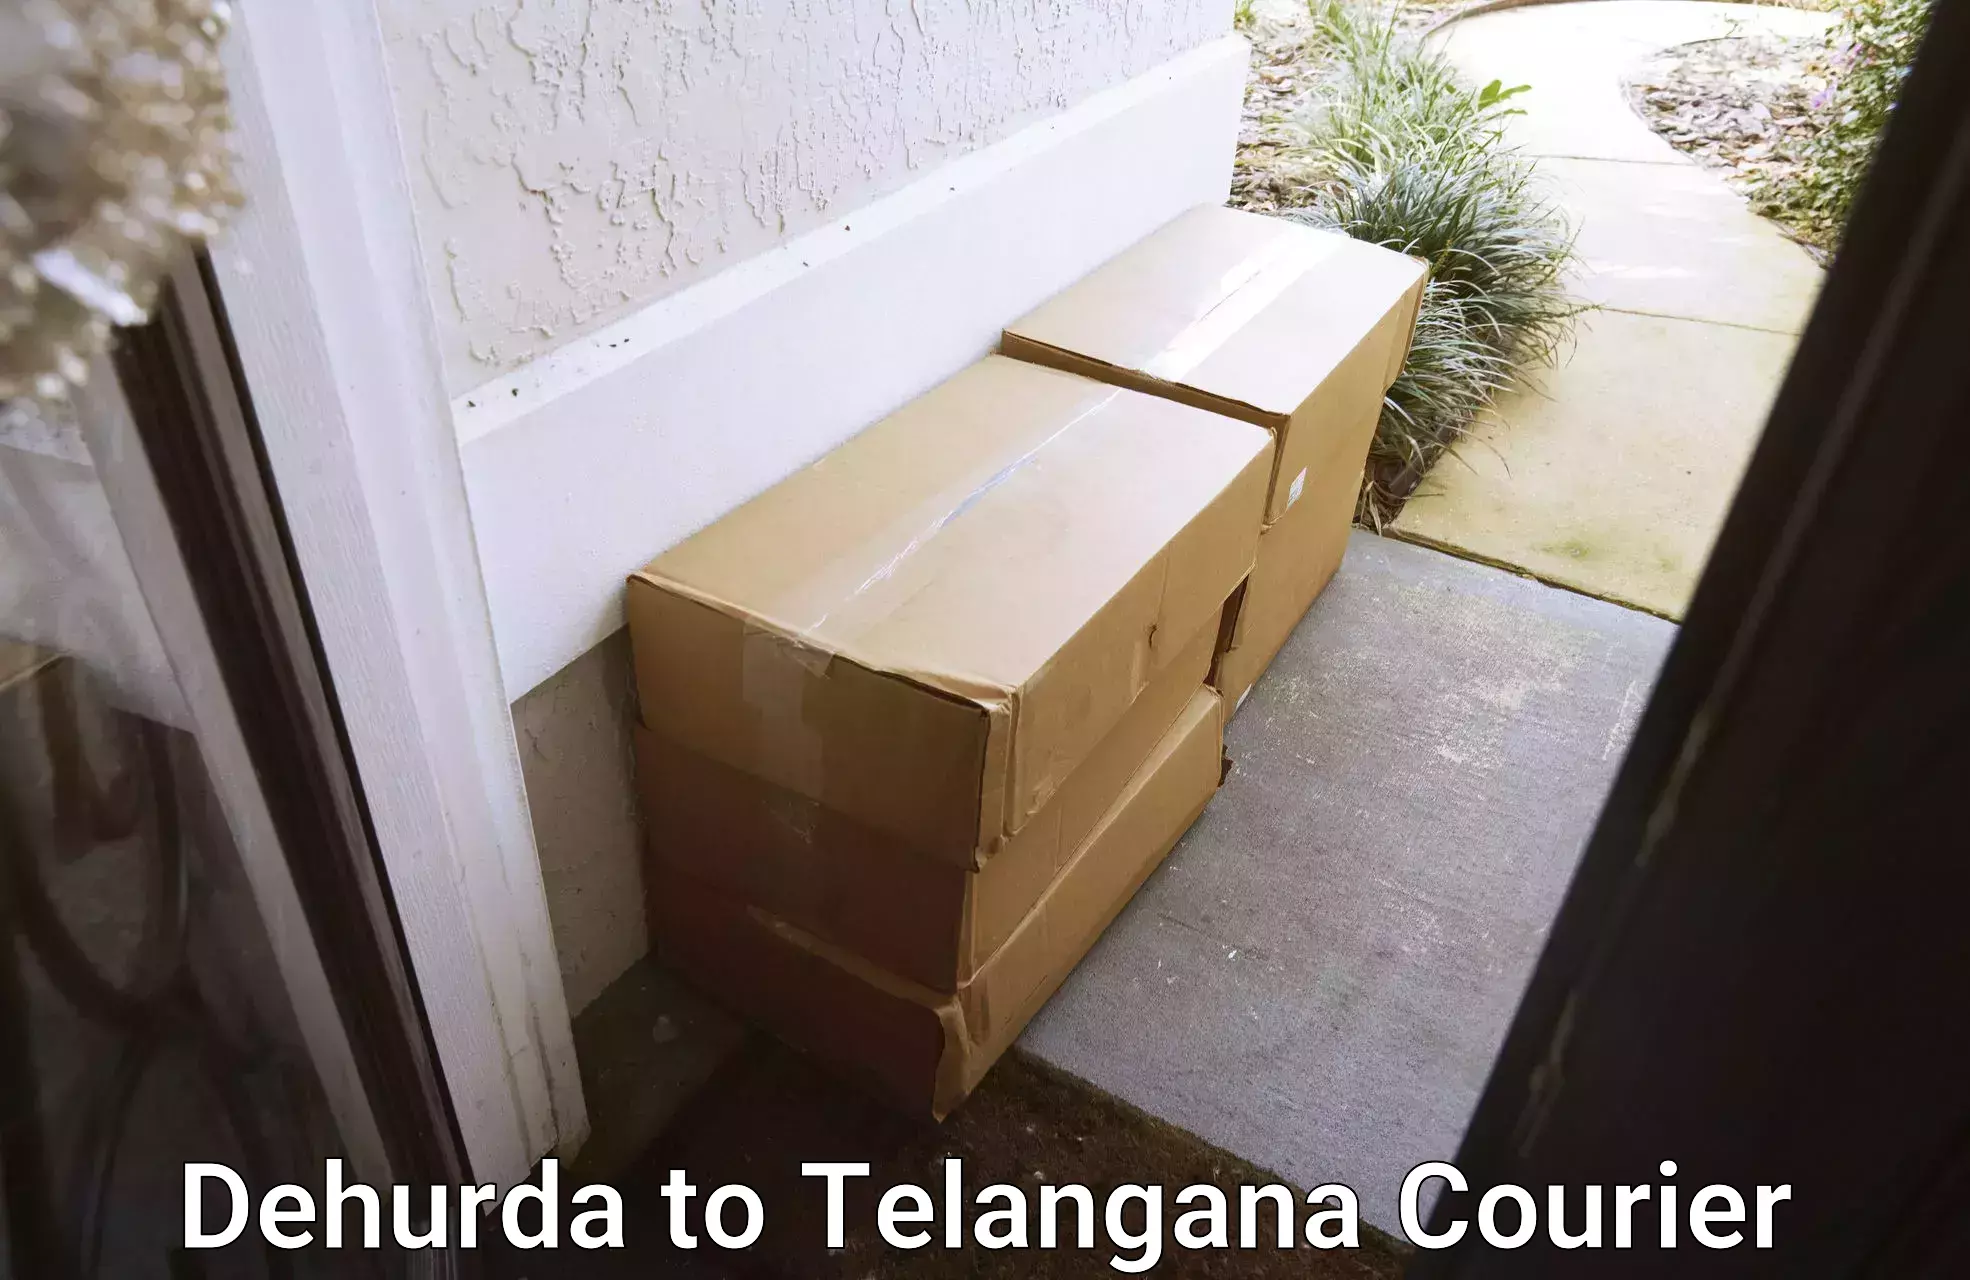 High-capacity parcel service in Dehurda to Wanaparthy